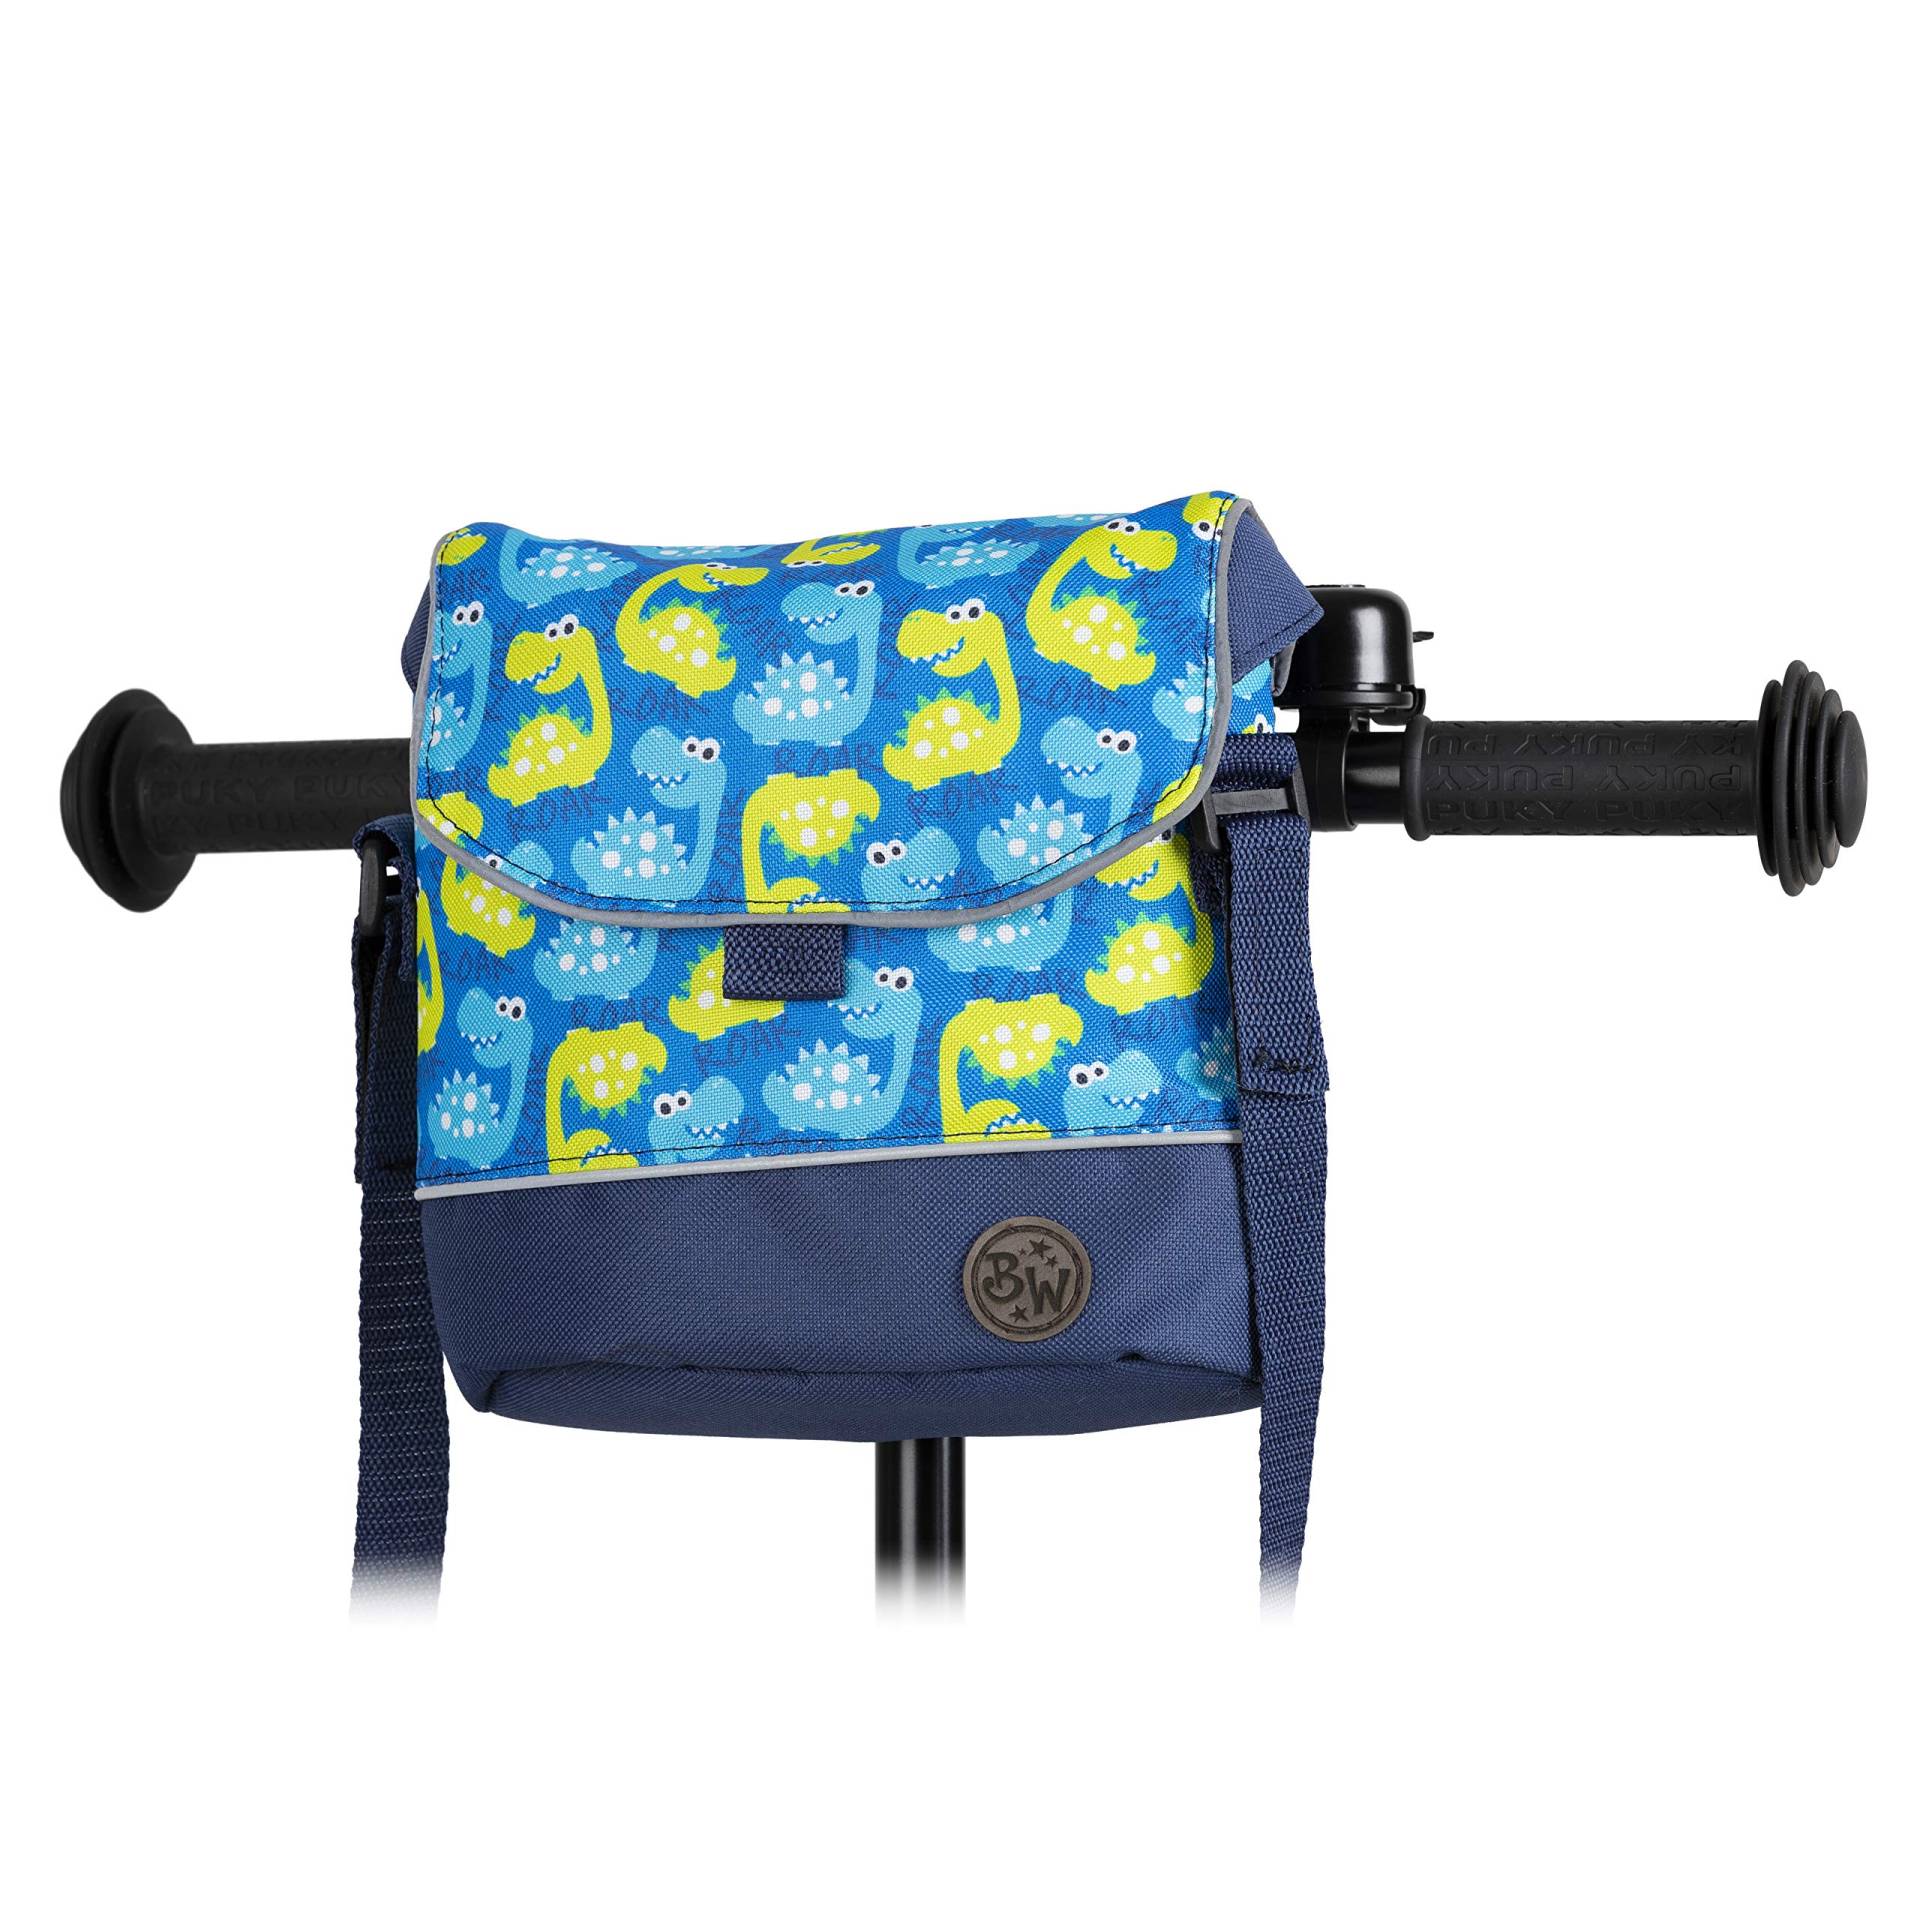 BAMBINIWELT Lenkertasche Tasche kompatibel mit Puky mit Woom Laufrad Räder Roller Fahrrad Fahrradtasche für Kinder wasserabweisend mit Schultergurt (Modell 11) von BambiniWelt by Rafael K.